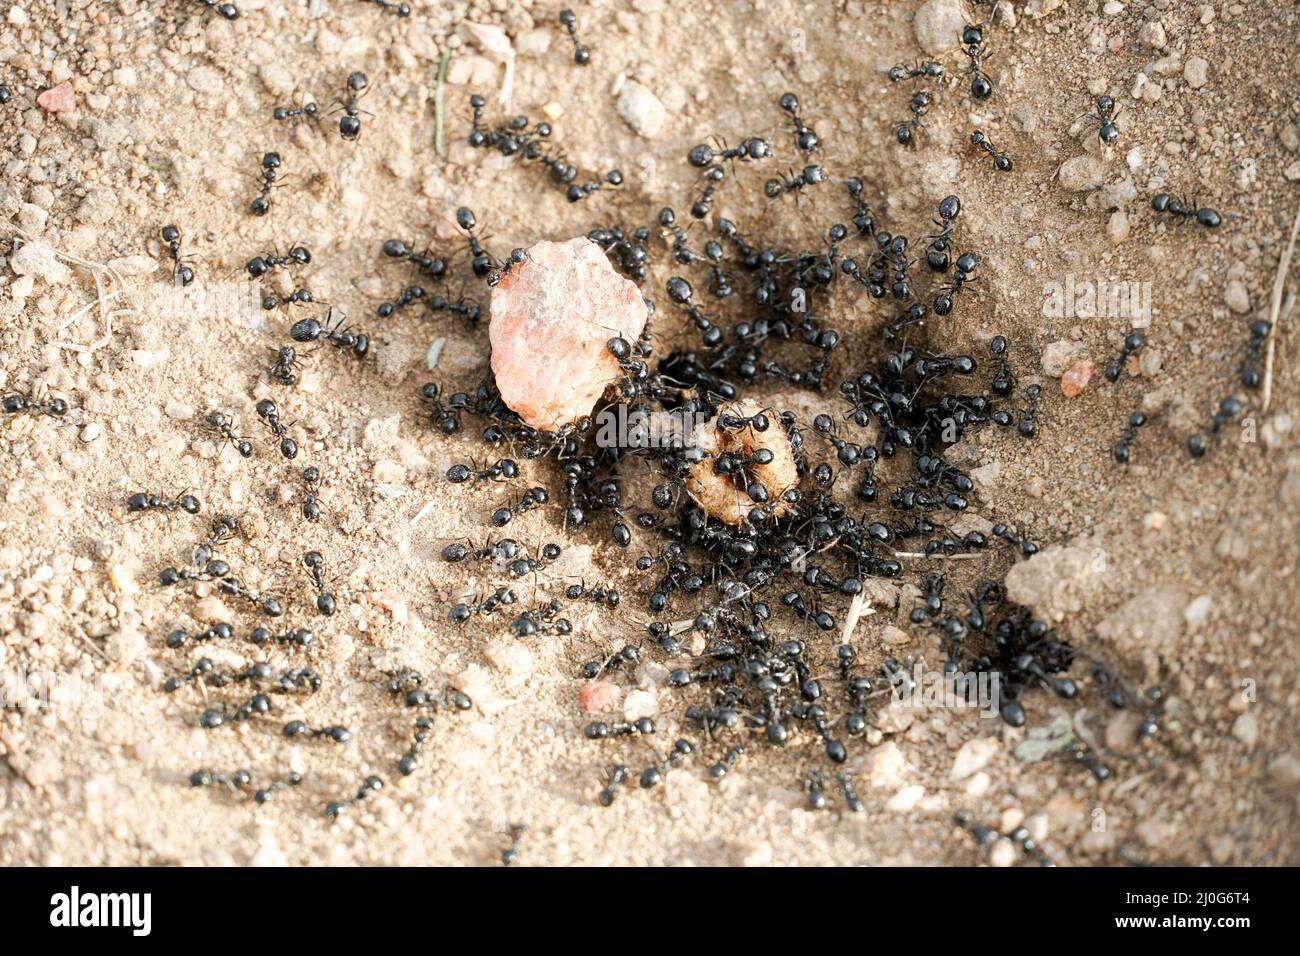 Black ants in desert near an anthill Stock Photo